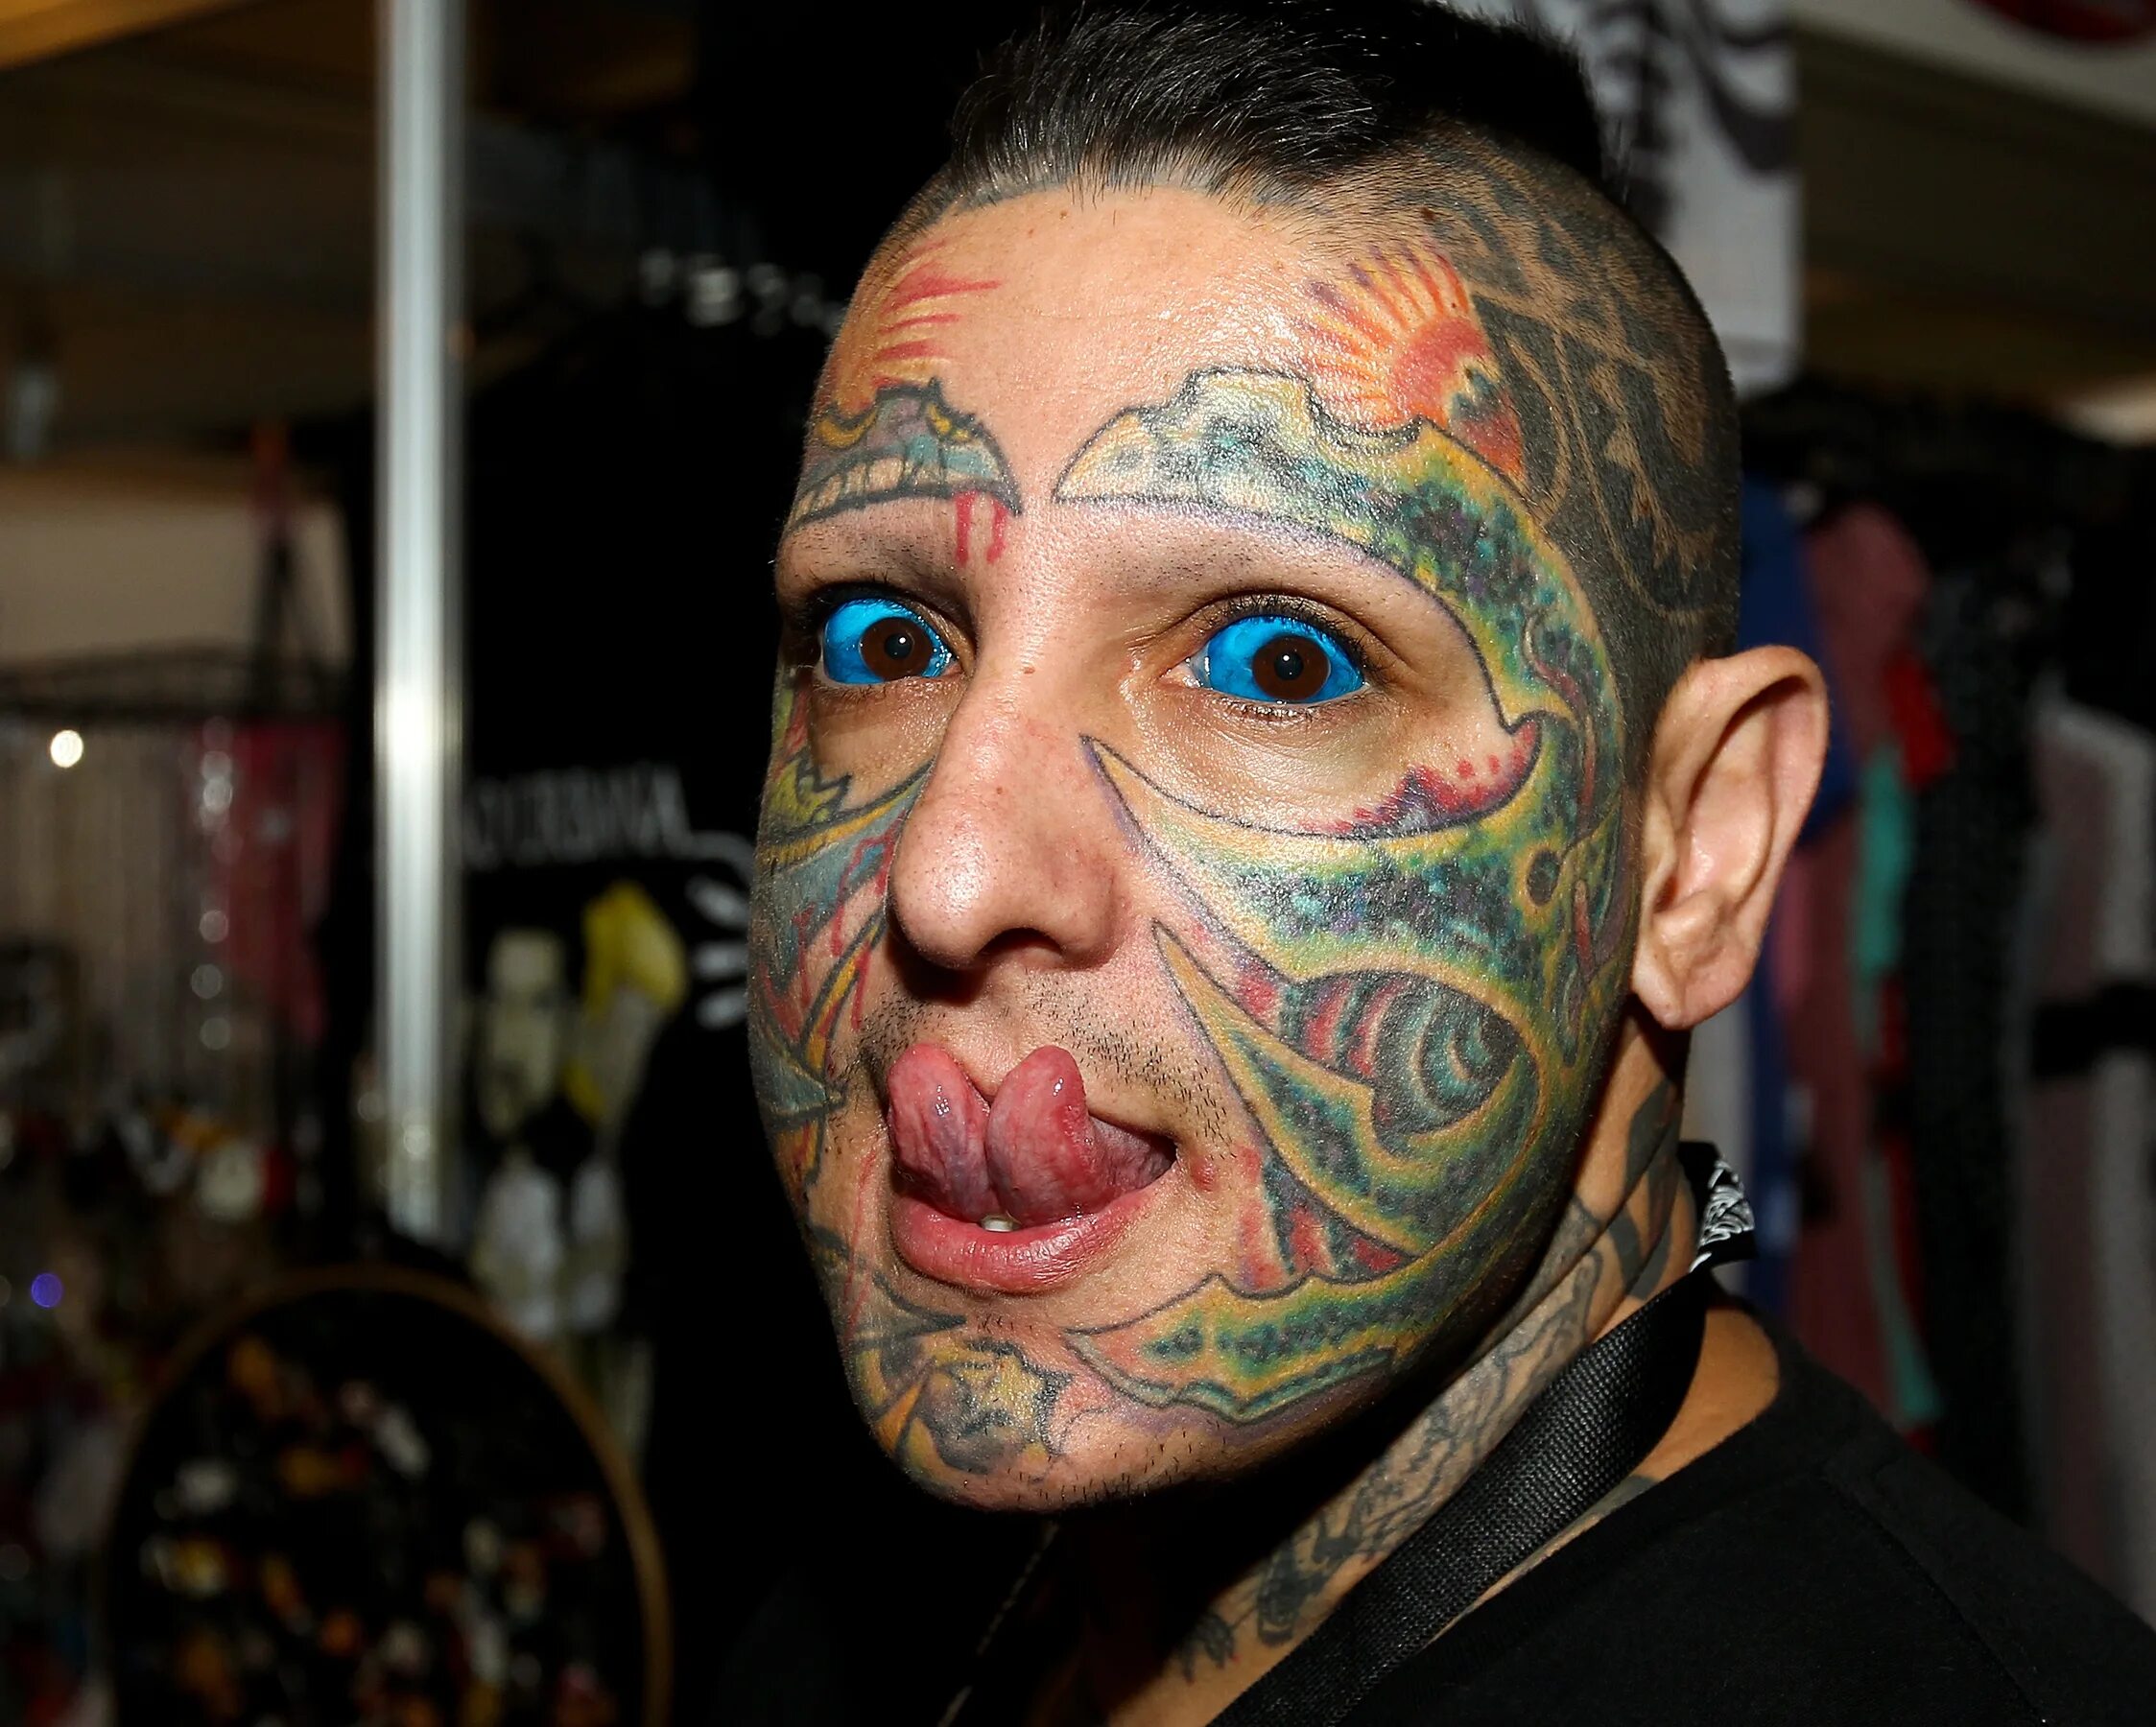 Nfne YF UKF[FP. Человек с татуированными глазами.